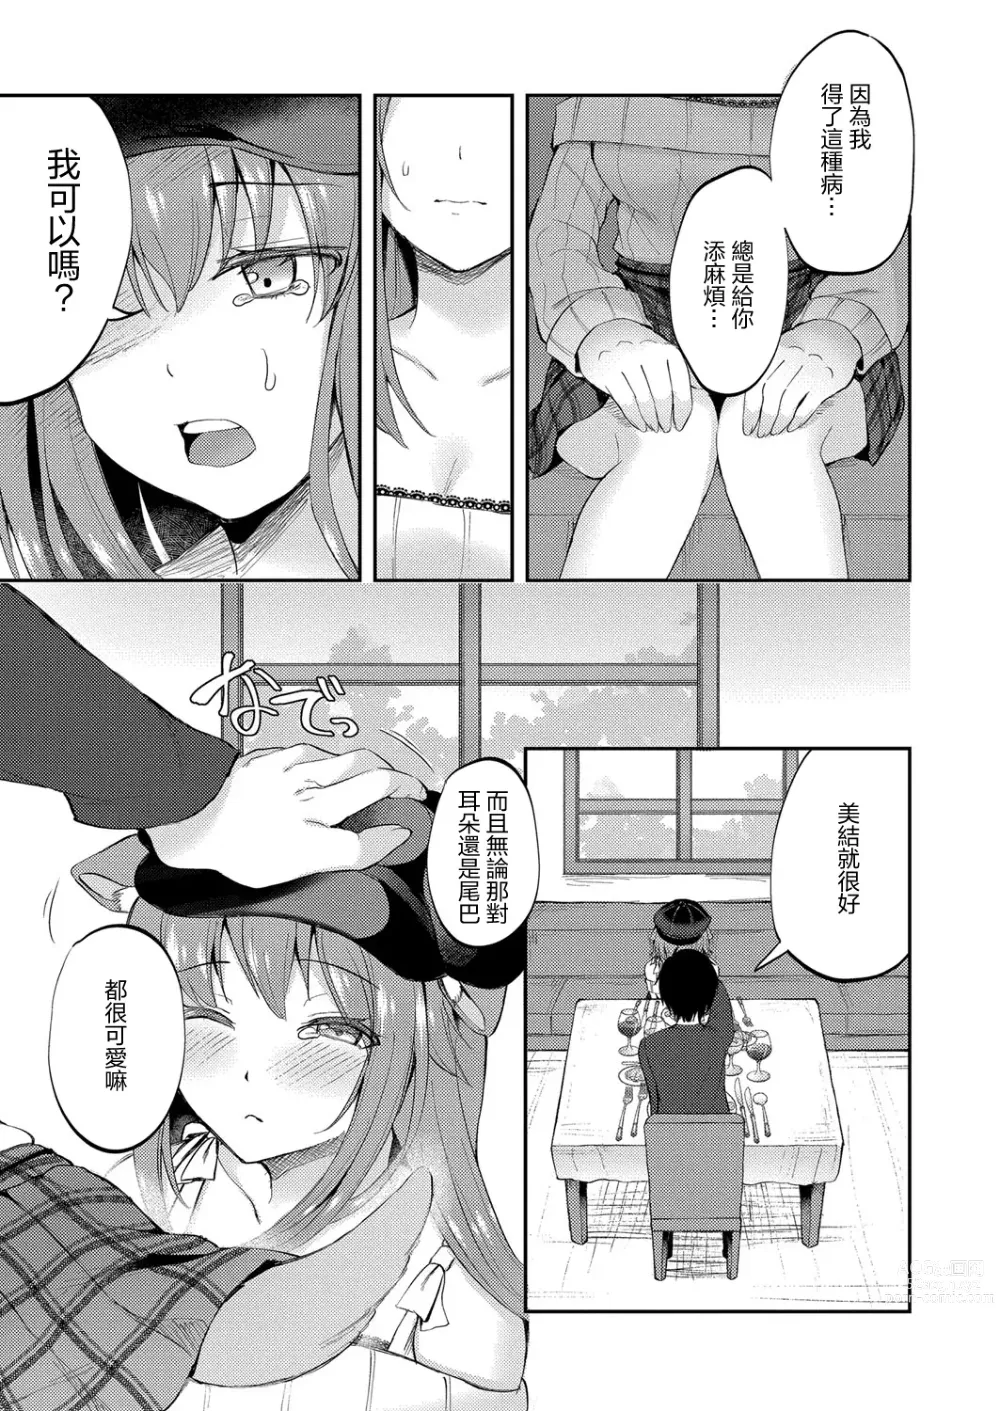 Page 3 of manga Juuka-shou Musume no Junan ~Inu Musume Miyu Hen~